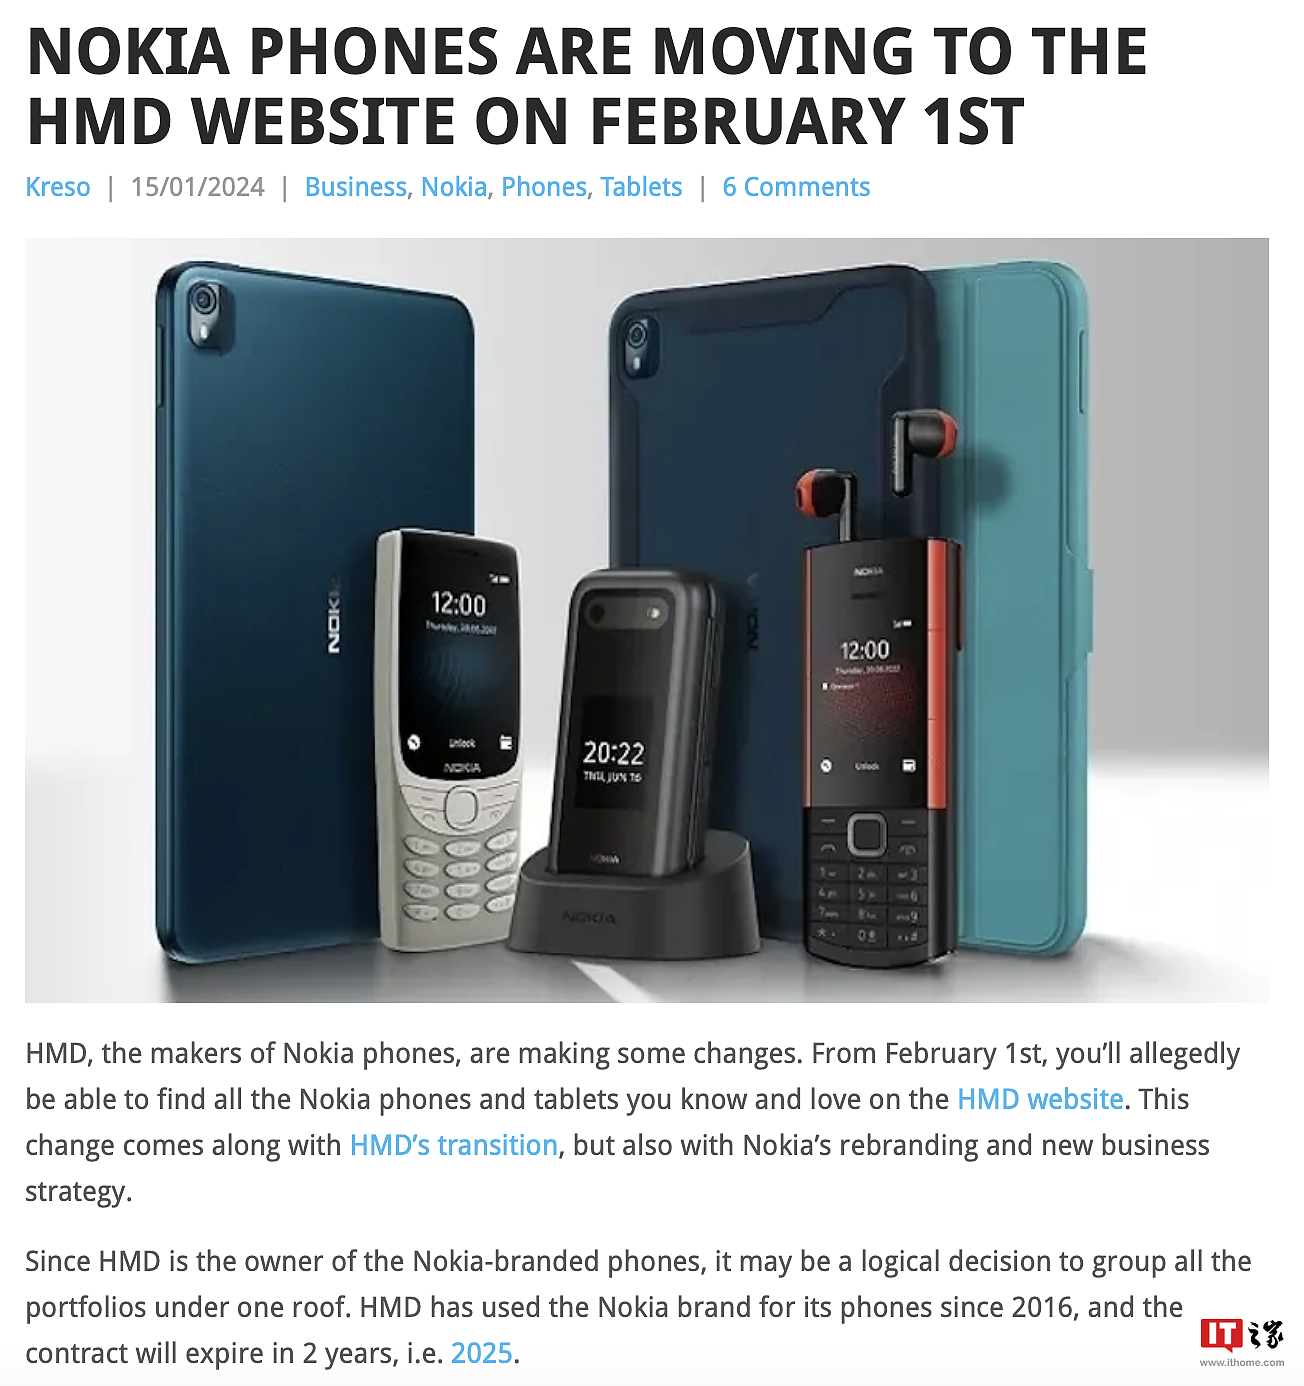 消息称诺基亚官网 2 月 1 日起移除手机板块页面，届时由 HMD Global 网站提供相关内容 - 2